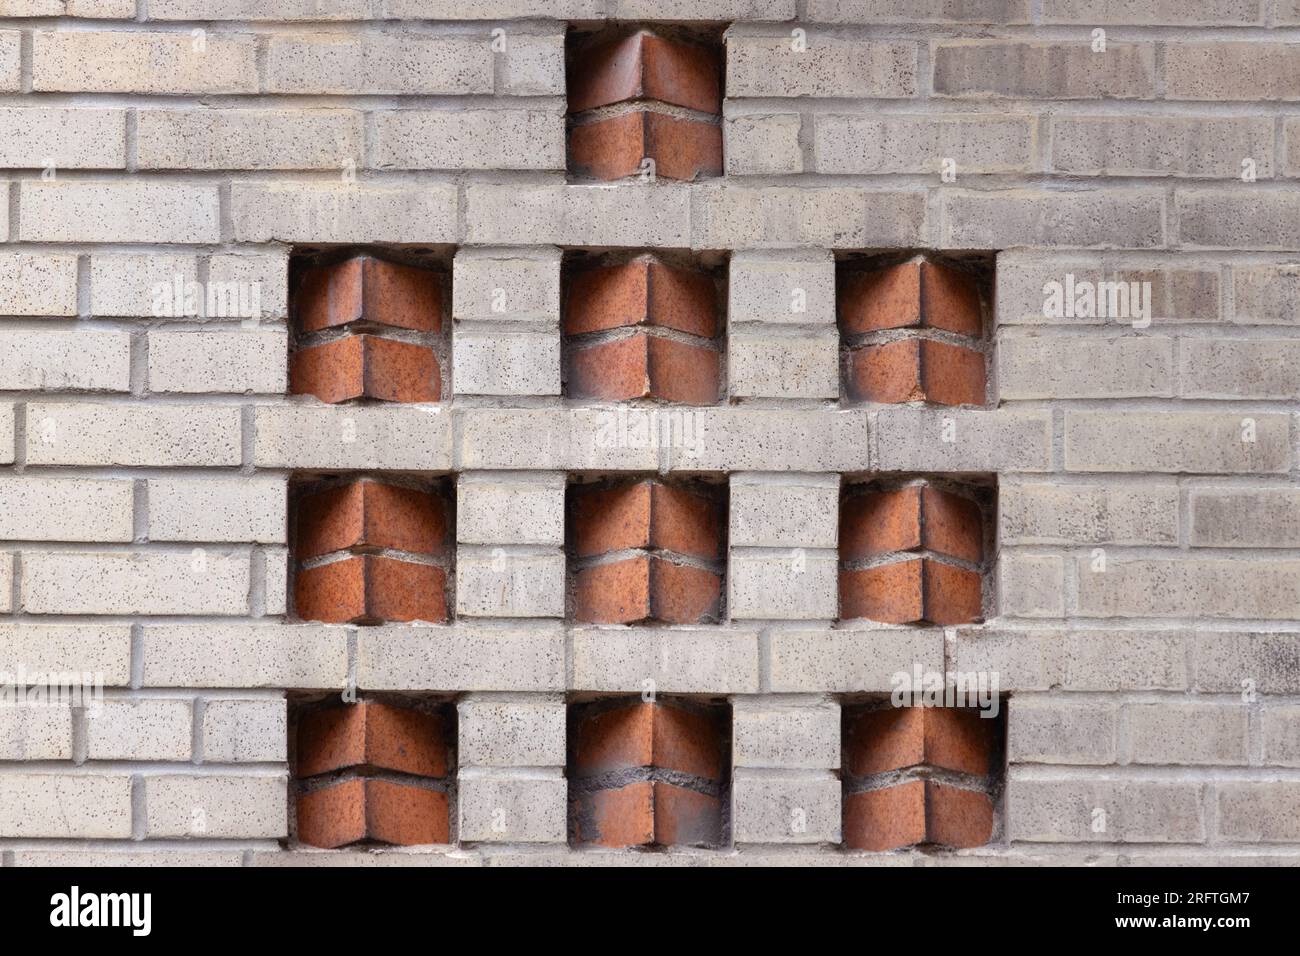 motif de brique décorative art déco à deux tons dans un mur de briques beiges avec des inserts de briques de couleur terre cuite dans un placement en dents de scie créent une géométrie Banque D'Images